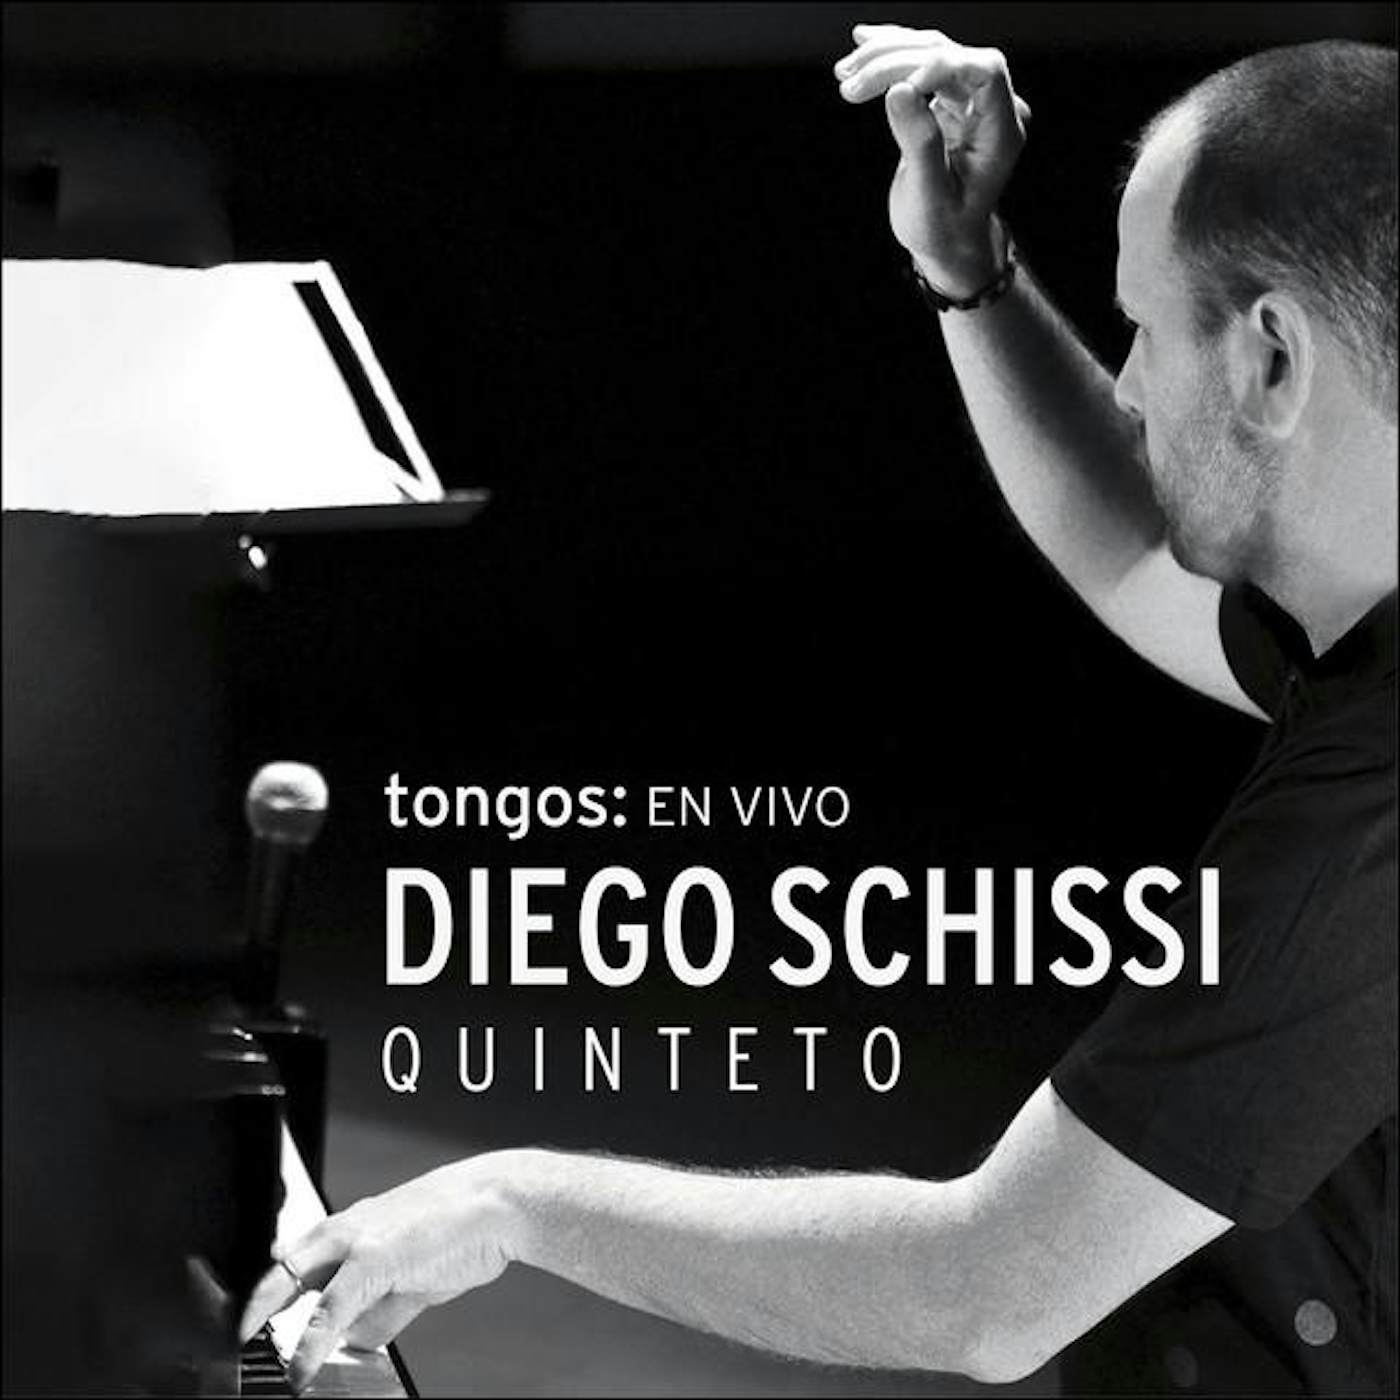 Diego Schissi